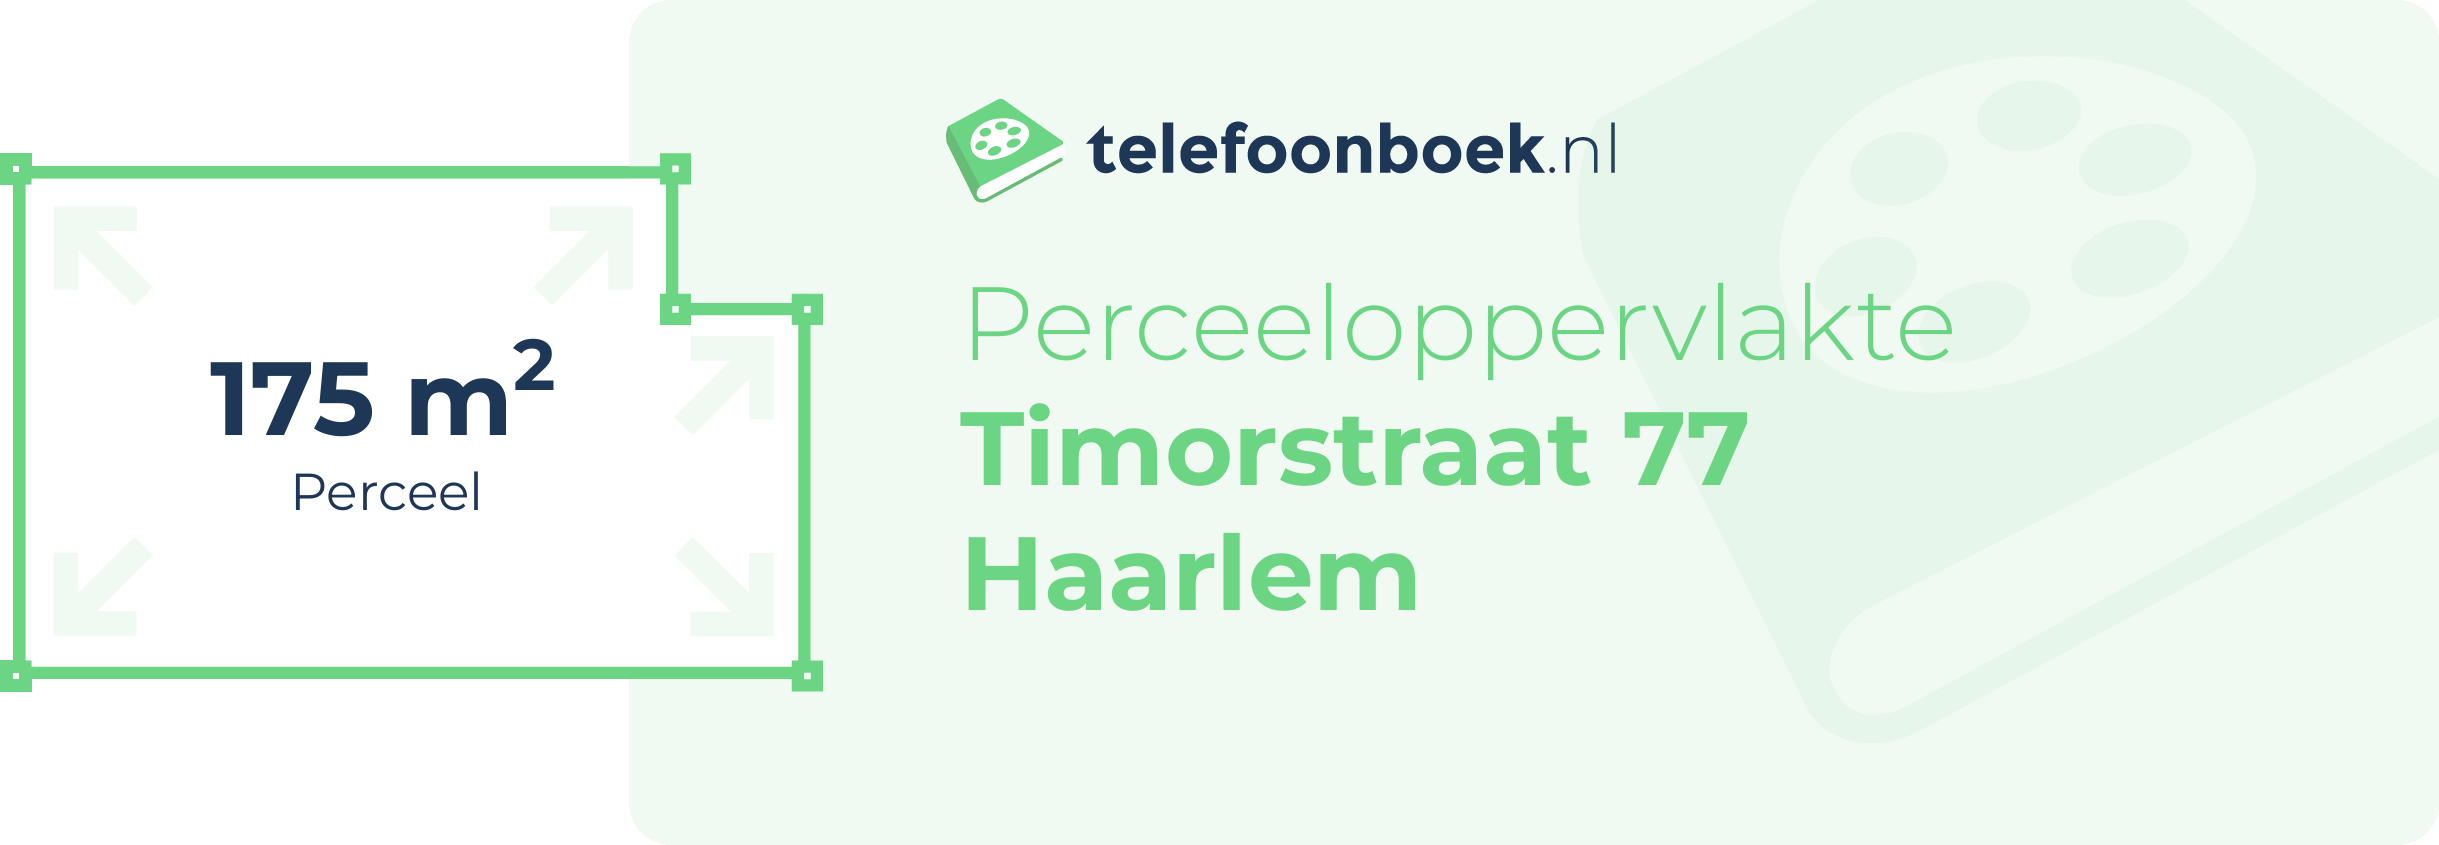 Perceeloppervlakte Timorstraat 77 Haarlem